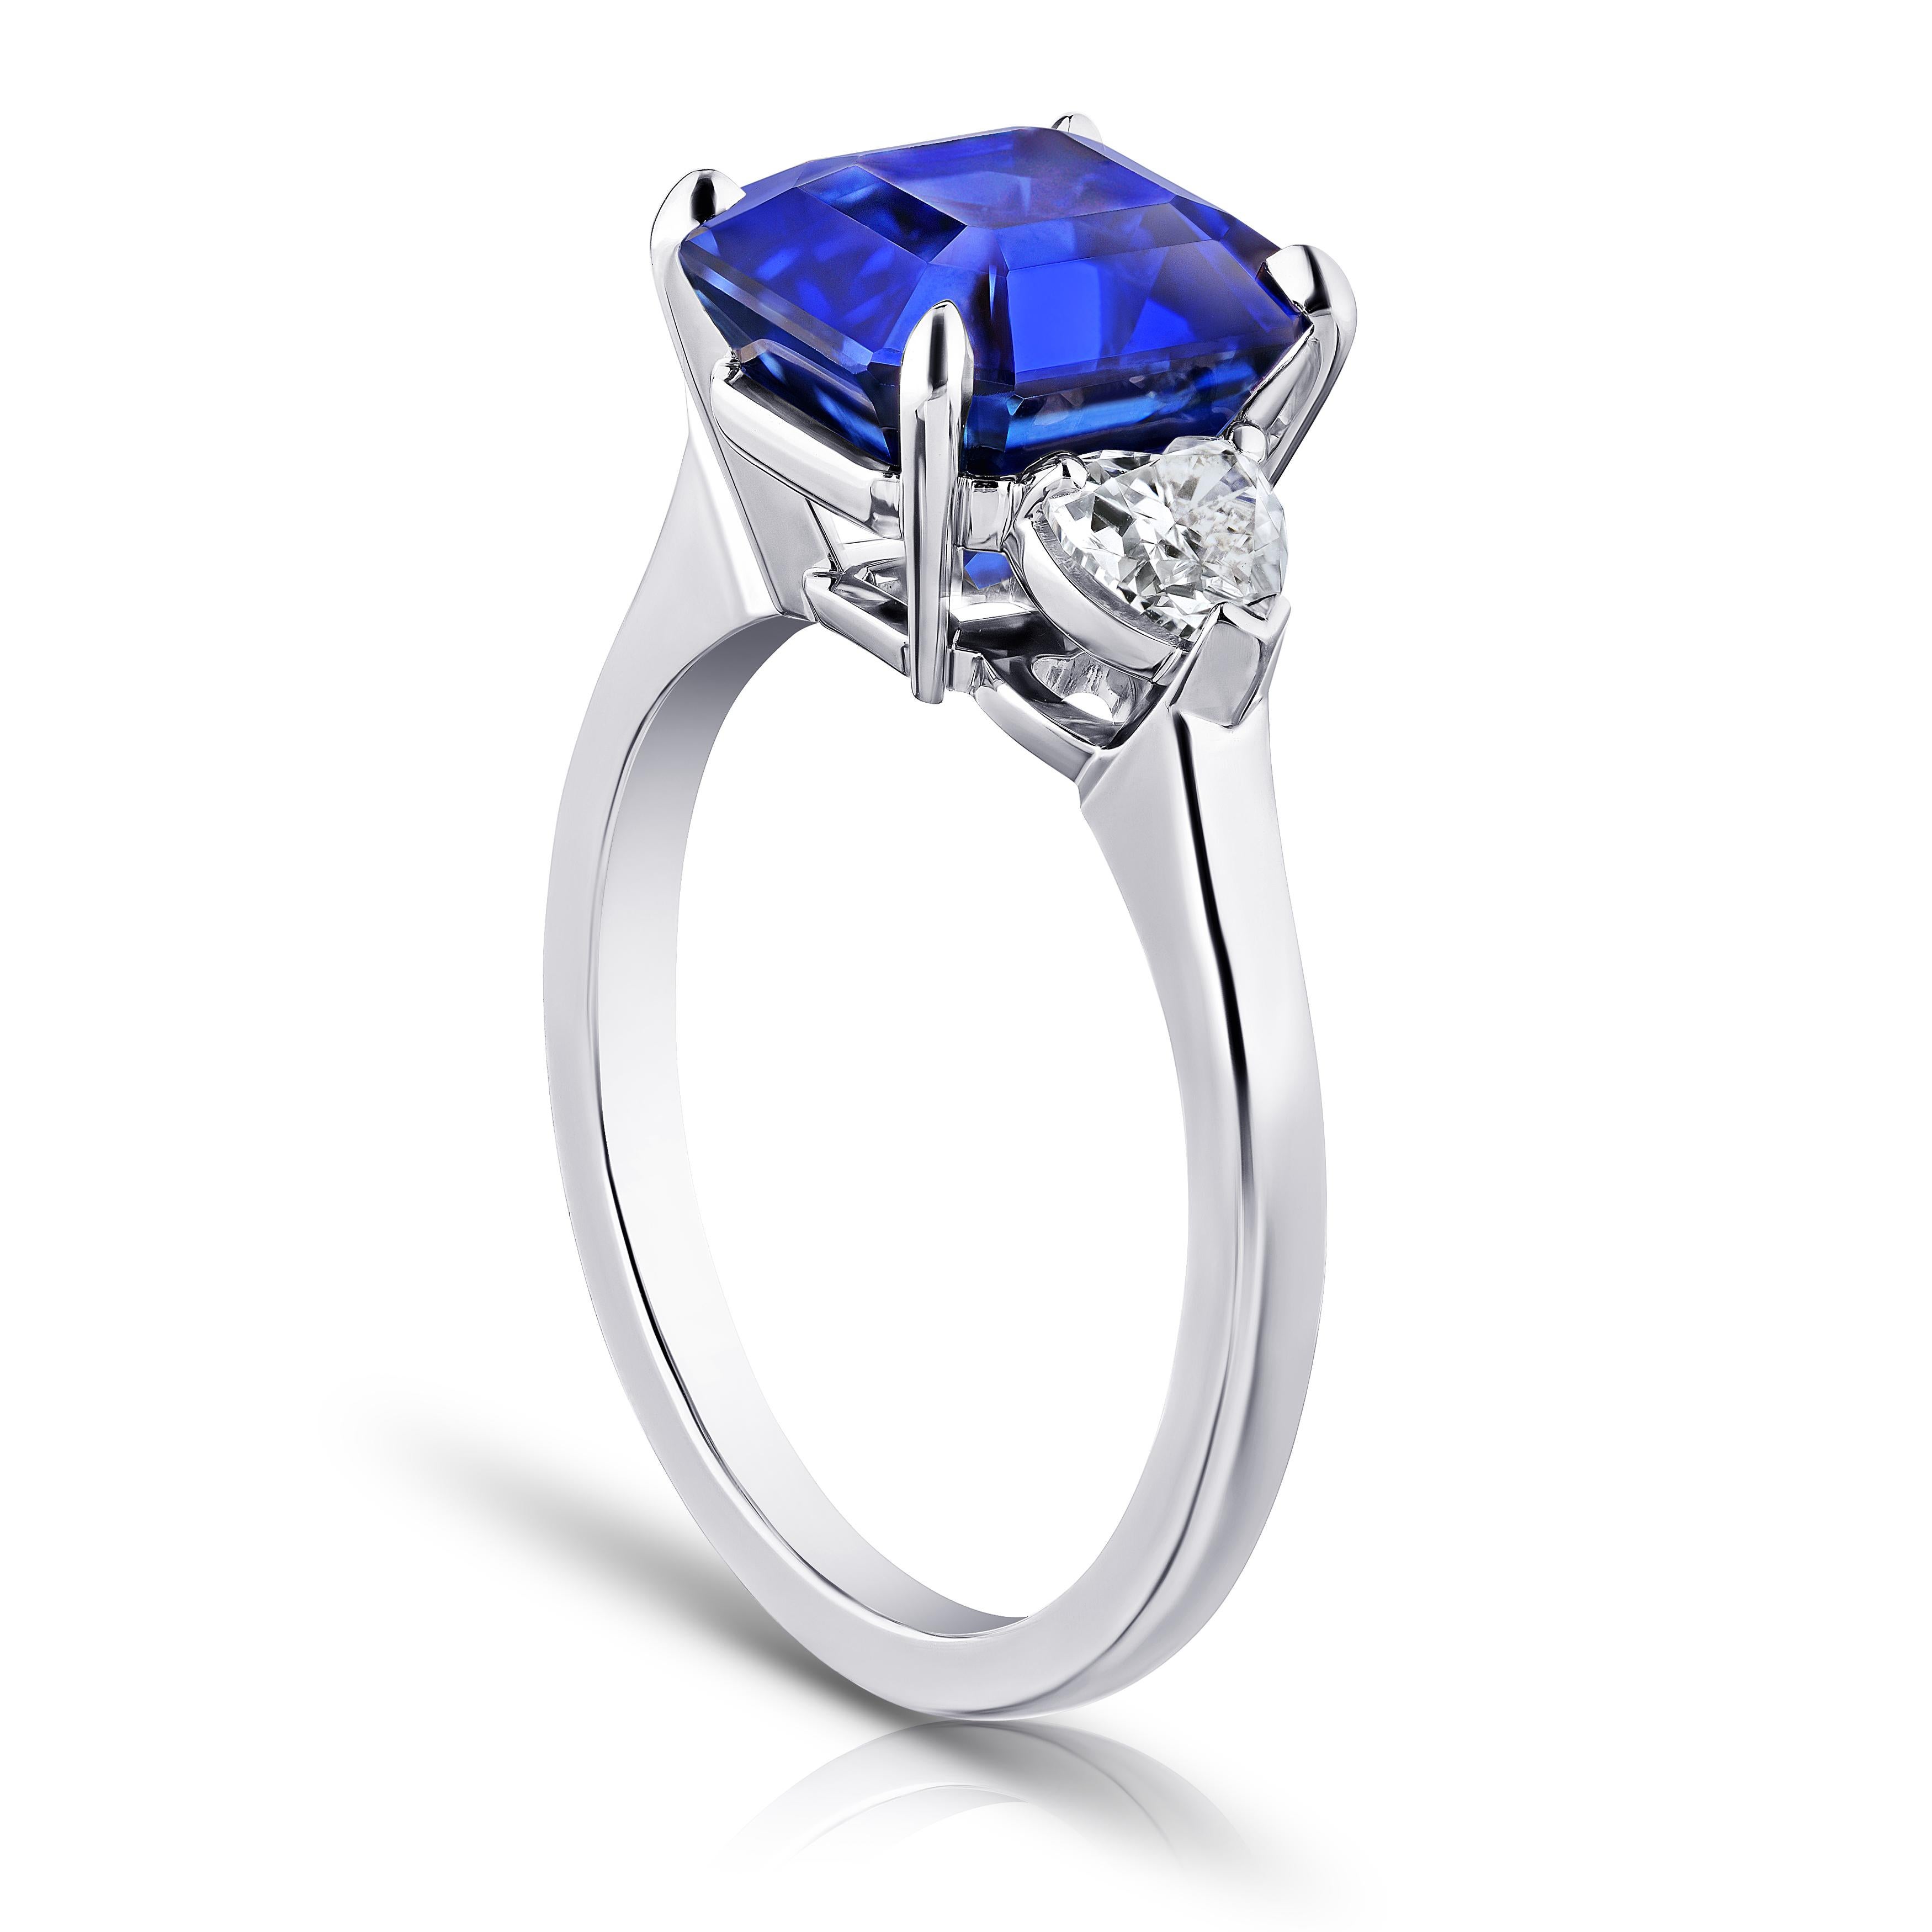 5.65 Karat quadratischer smaragdblauer Saphir mit herzförmigen Diamanten von 0,58 Karat, gefasst in einem Platinring Größe 7.
